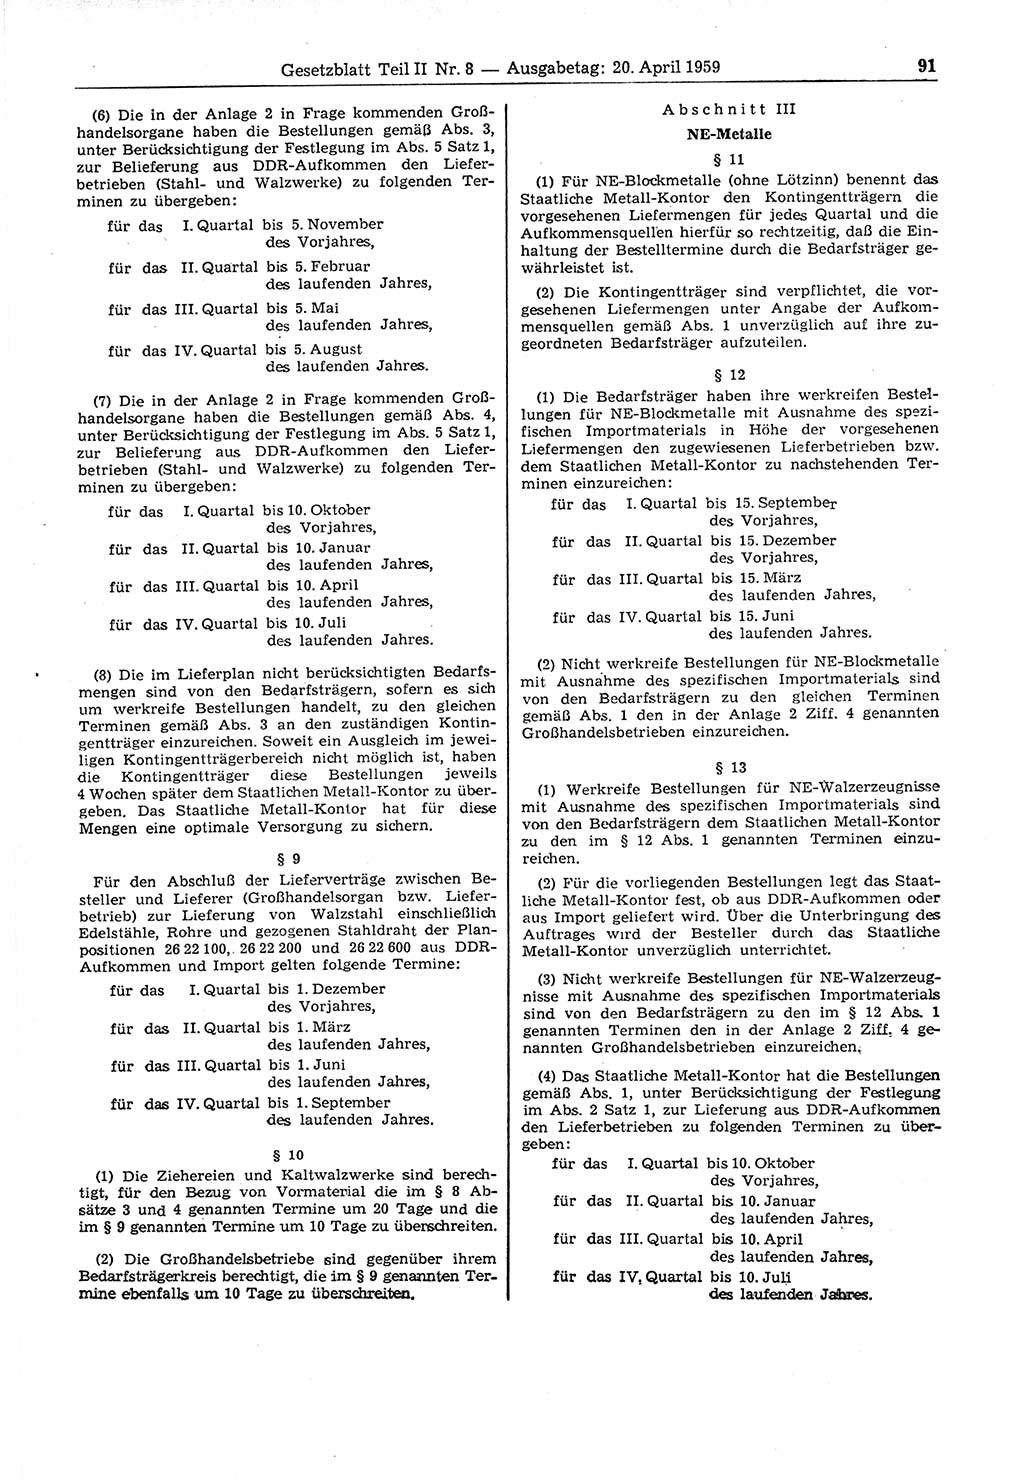 Gesetzblatt (GBl.) der Deutschen Demokratischen Republik (DDR) Teil ⅠⅠ 1959, Seite 91 (GBl. DDR ⅠⅠ 1959, S. 91)